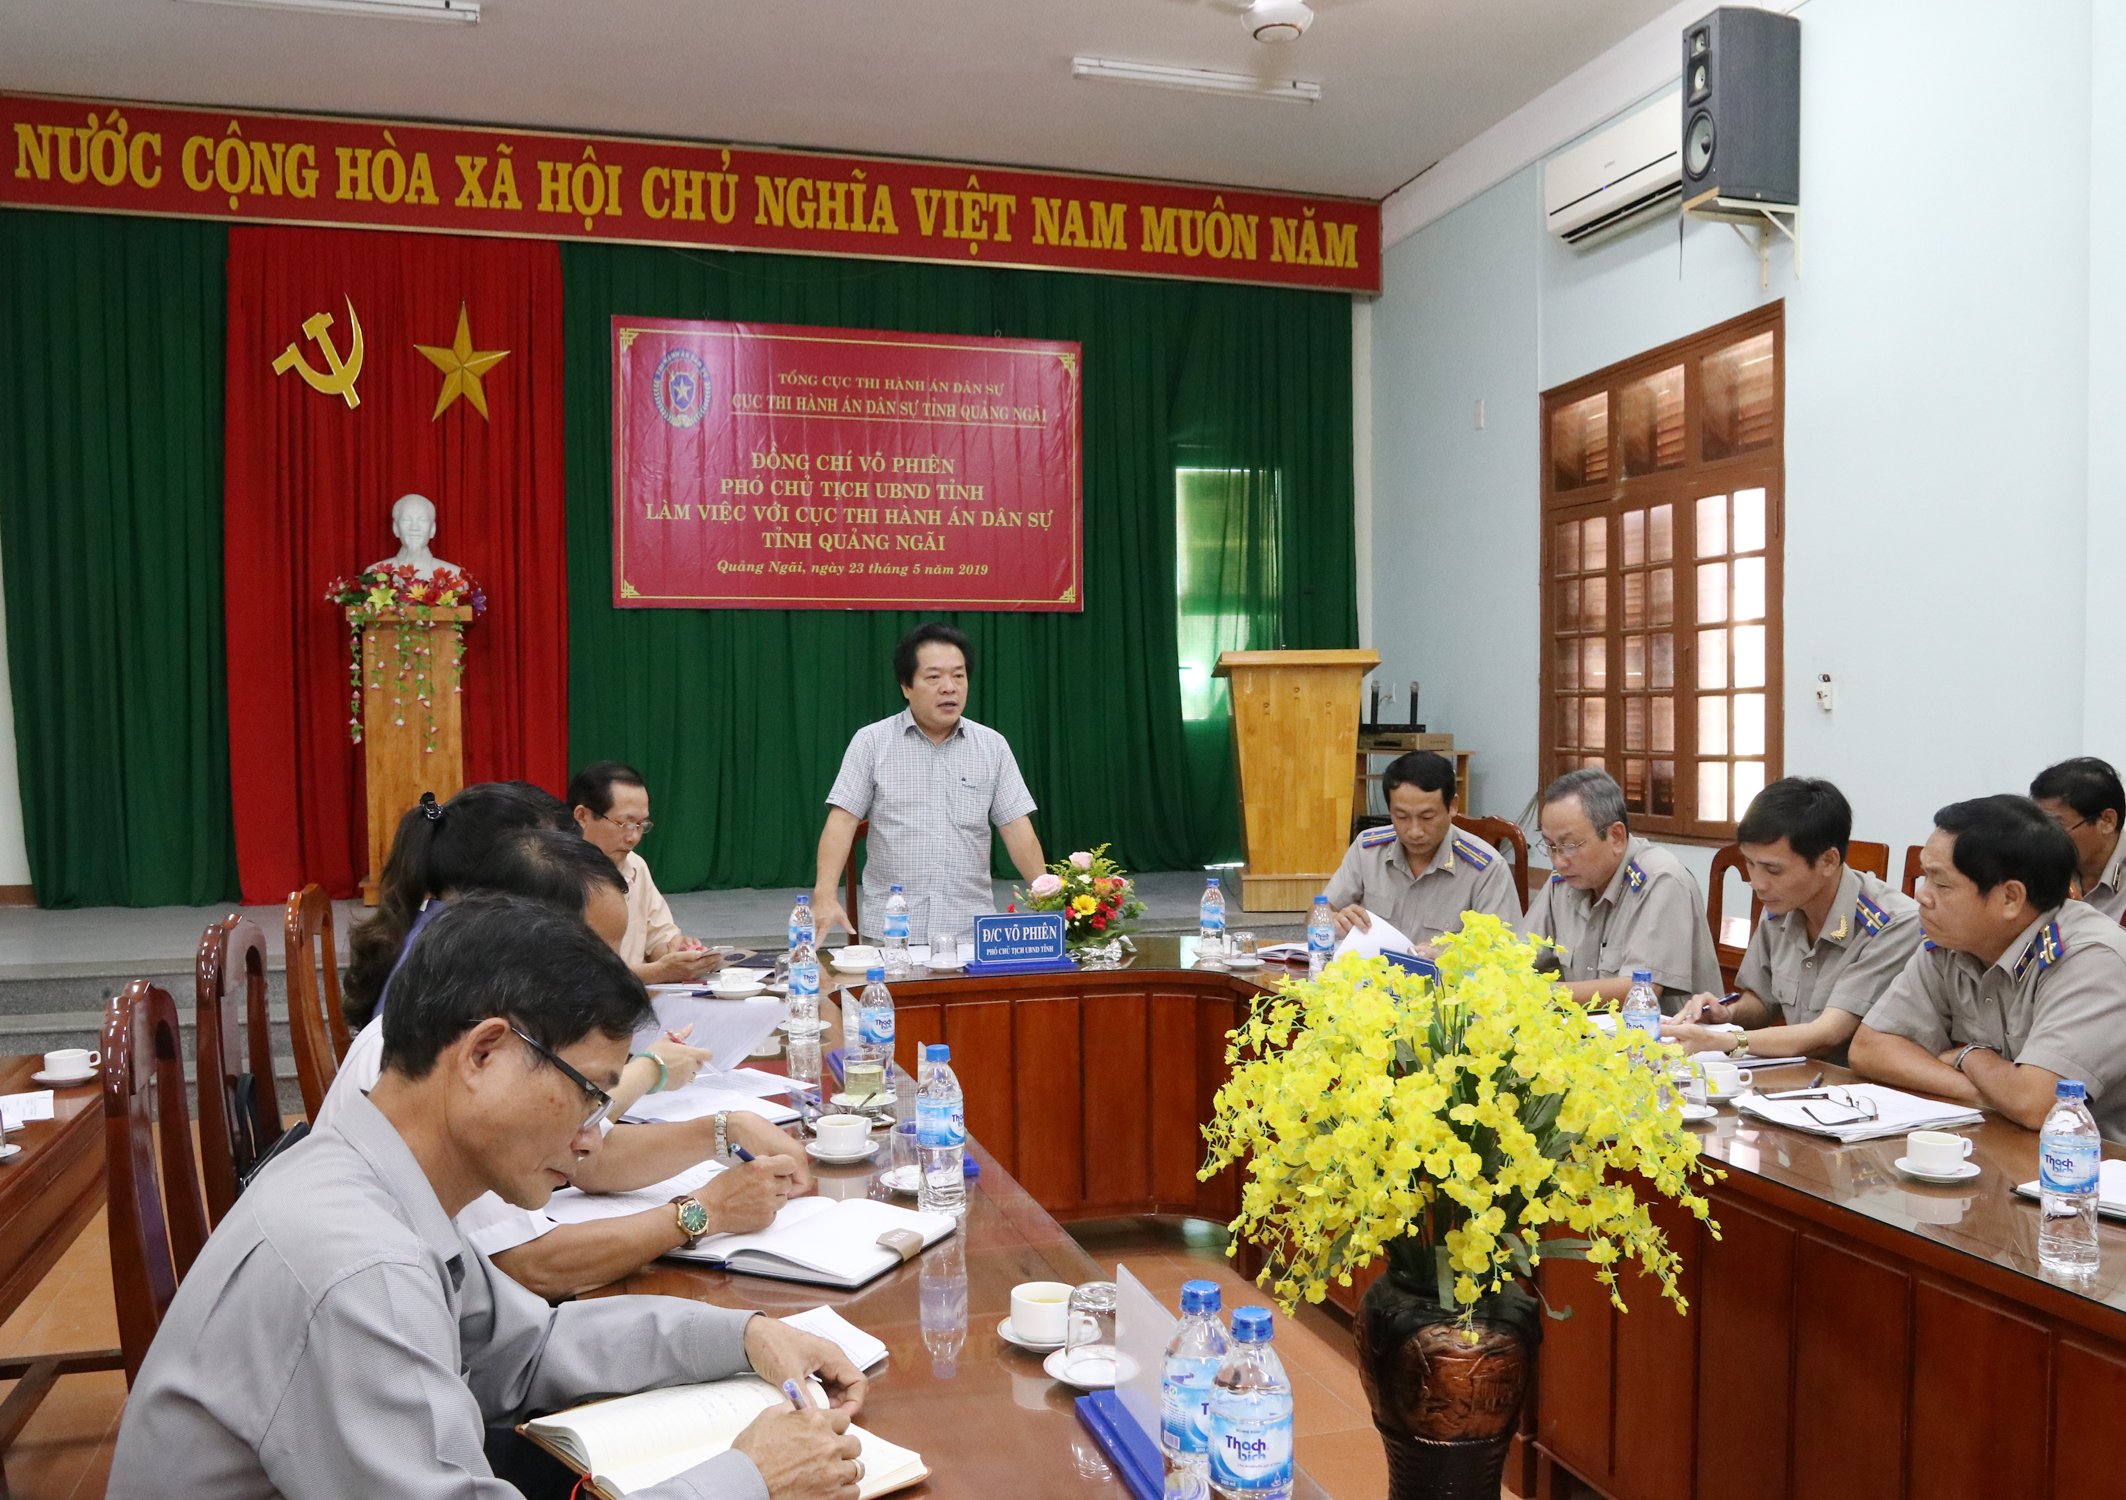 Đồng chí Võ Phiên- Phó Chủ tịch UBND tỉnh làm việc với Cục Thi hành án dân sự tỉnh Quảng Ngãi